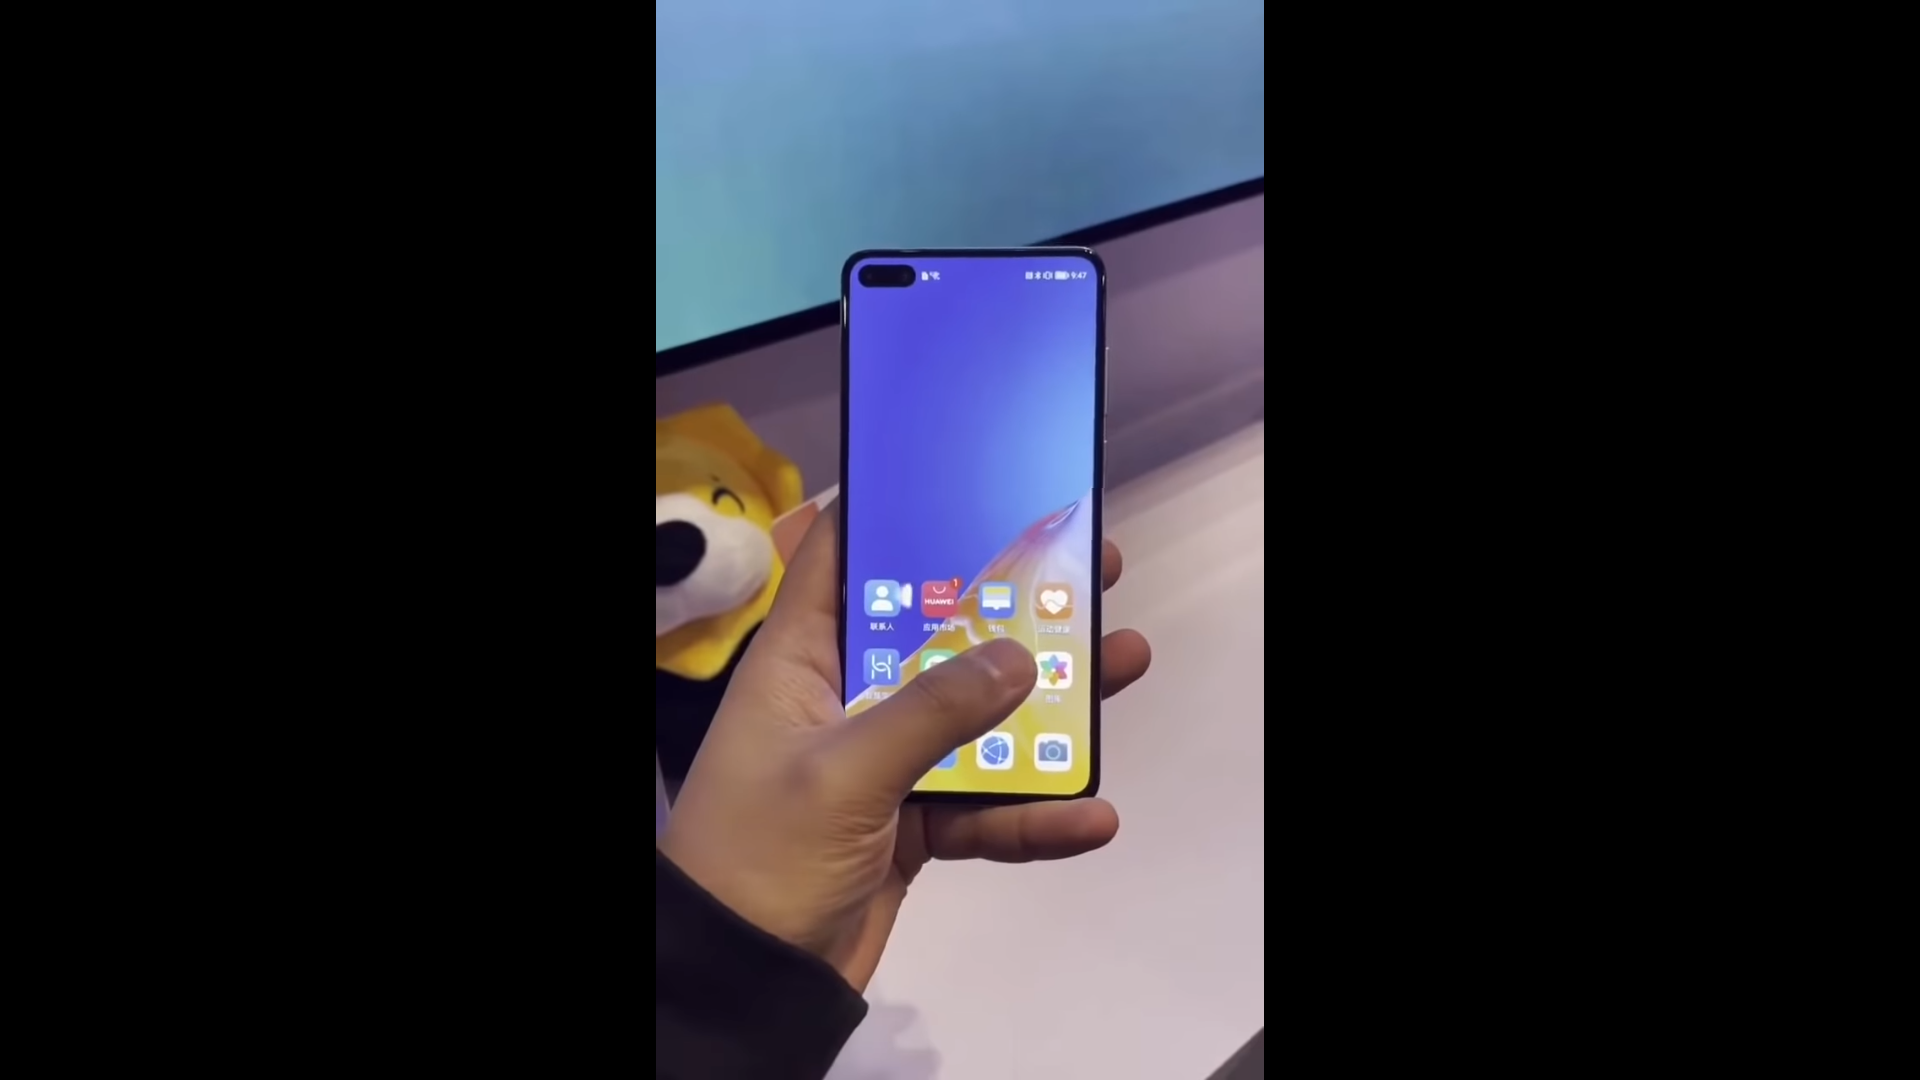 Prévia do Huawei P40 executando o HarmonyOS 2.0 em vídeo!